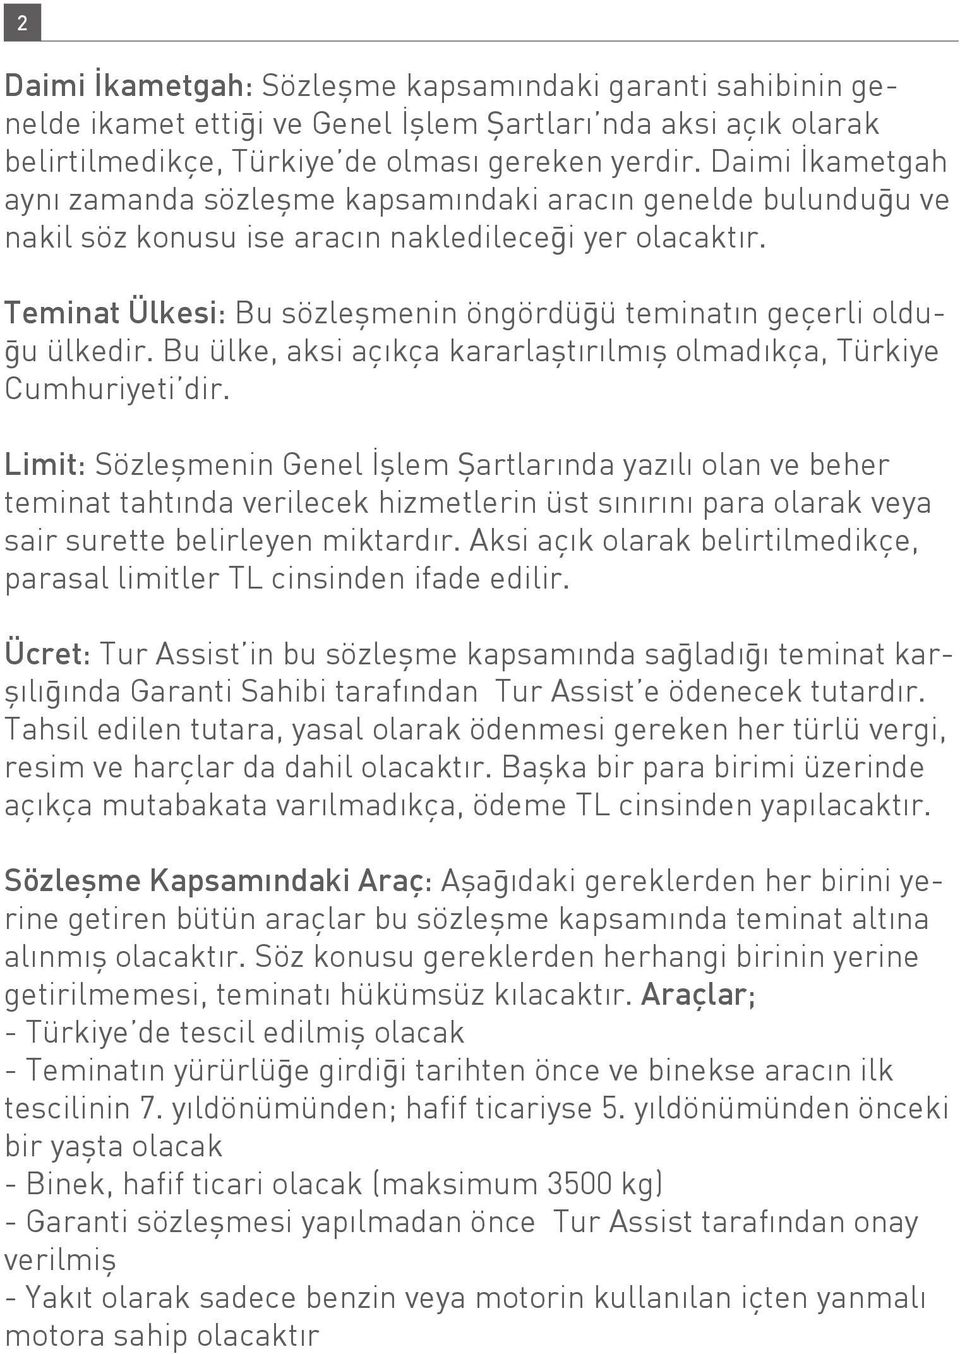 Teminat Ülkesi: Bu sözleşmenin öngördüğü teminatın geçerli olduğu ülkedir. Bu ülke, aksi açıkça kararlaştırılmış olmadıkça, Türkiye Cumhuriyeti dir.